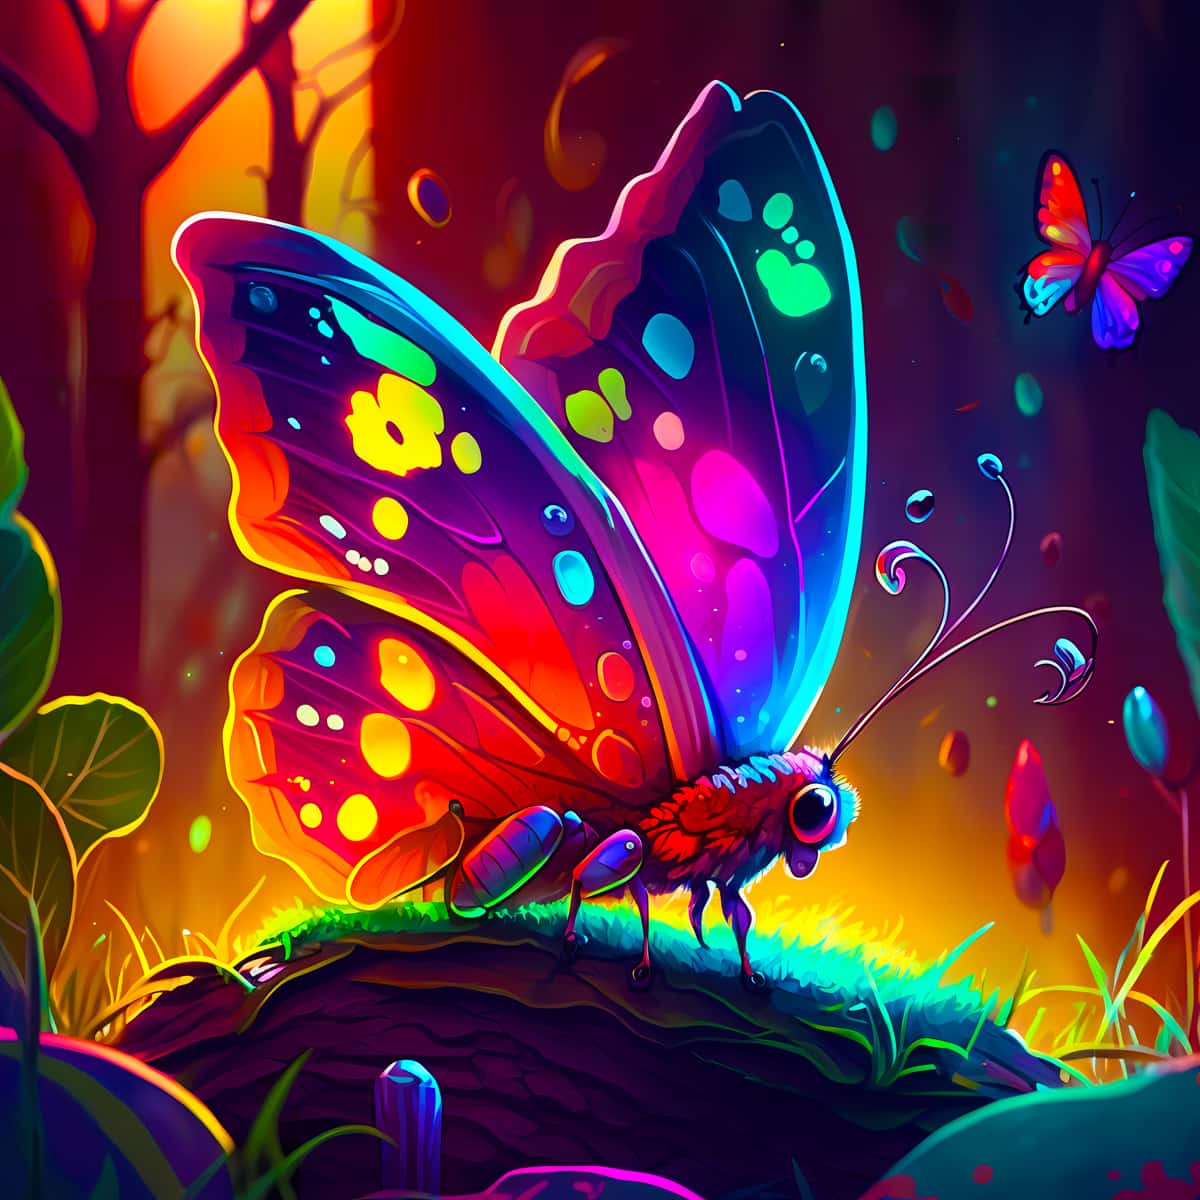 AB Diamond Painting - Neon Schmetterling im Zauberwald - gedruckt in Ultra-HD - AB Diamond, Fantasy, Neu eingetroffen, Quadratisch, Schmetterling, Tiere